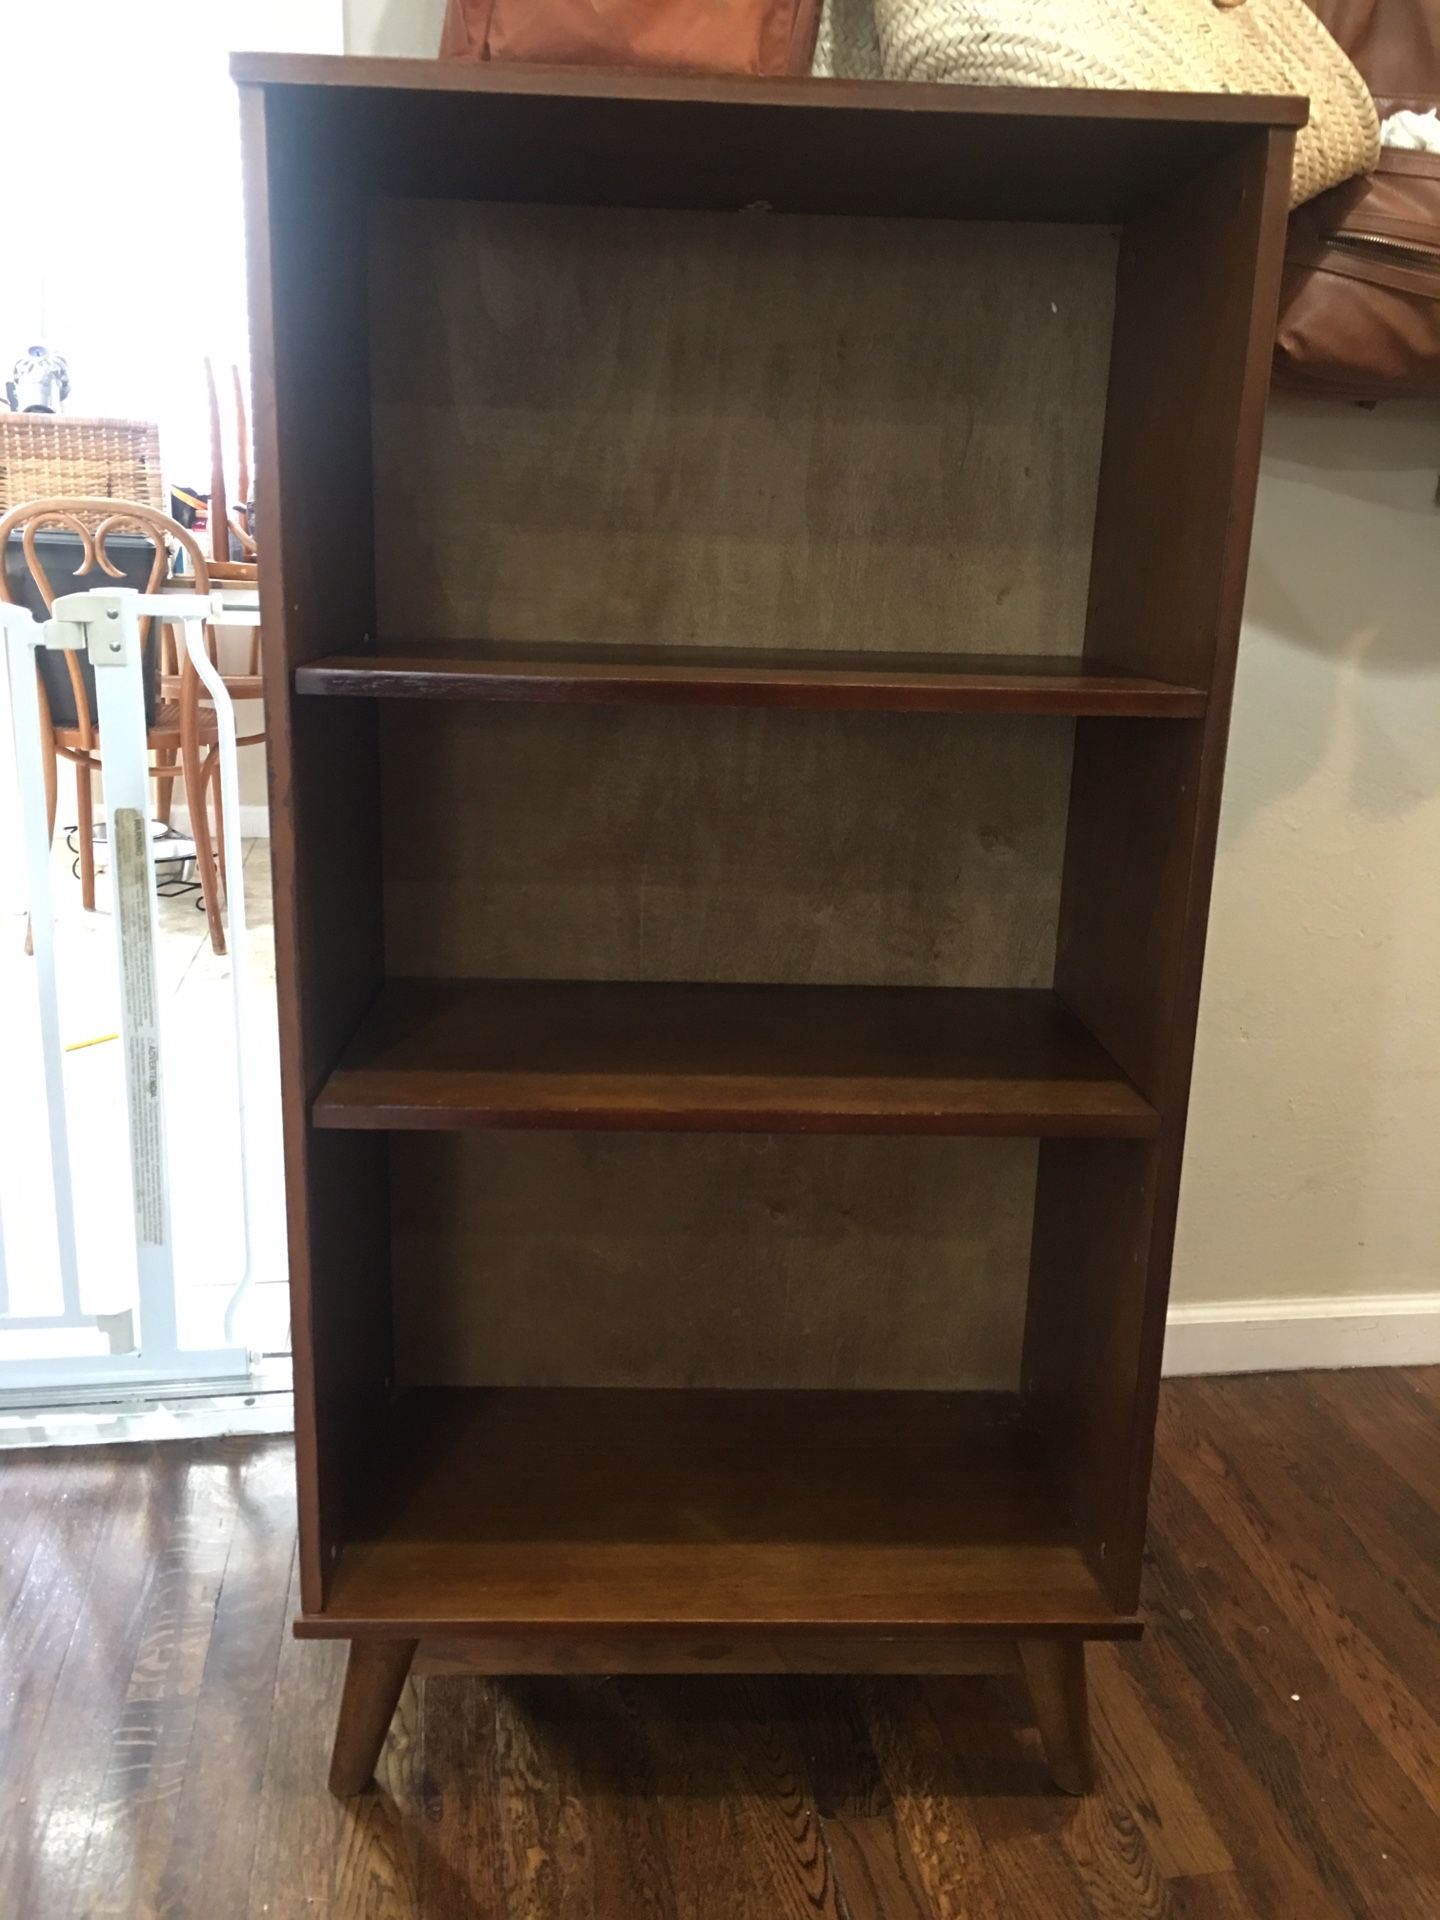 Midcentury style bookshelf / bookcase